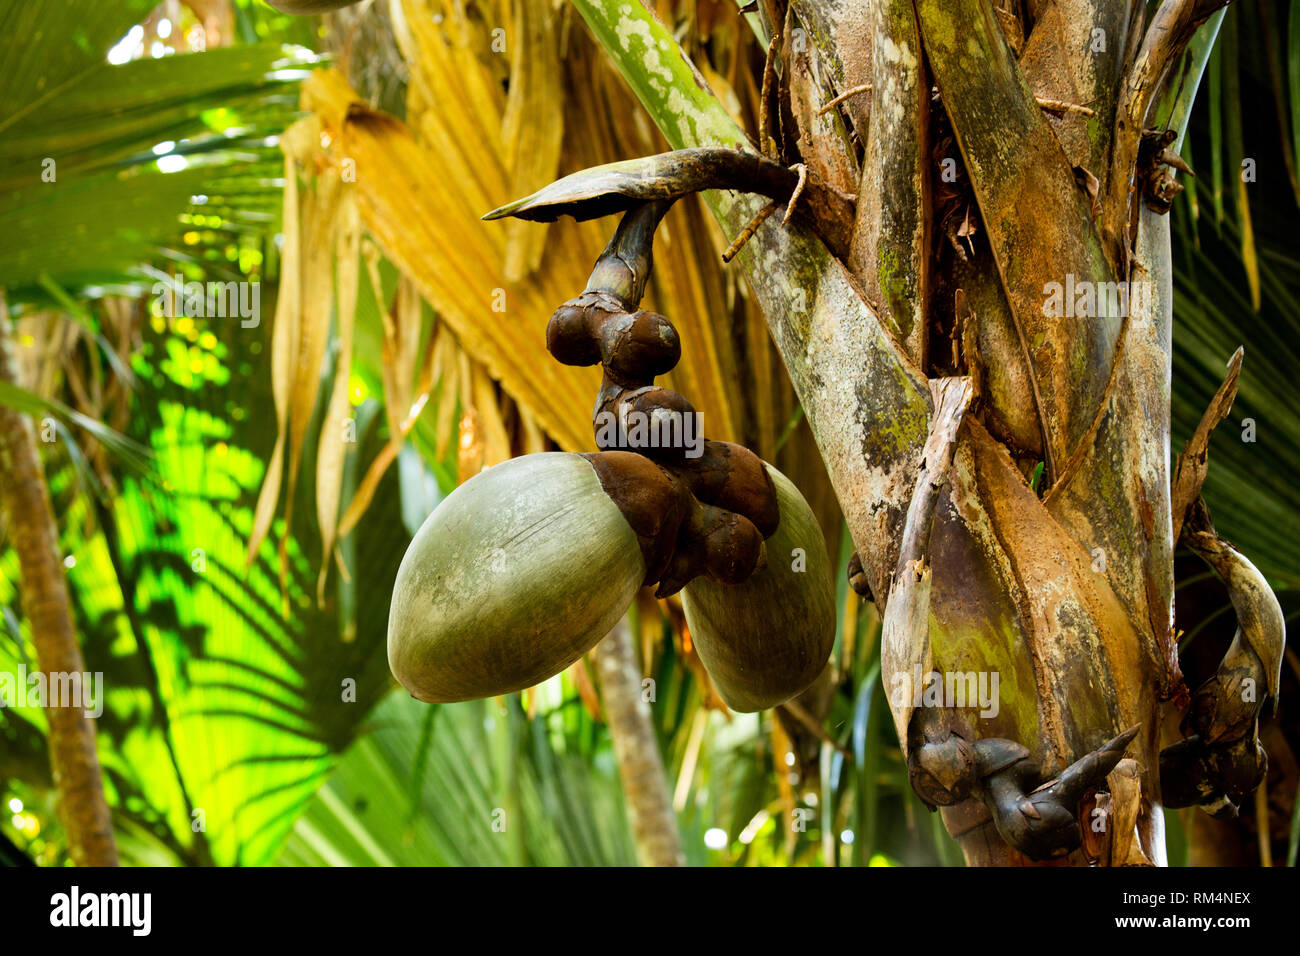 Coco de Mer semilla (Lodoicea maldivica). Este es el mayor y más pesado de semillas en el mundo. Puede pesar hasta 30 kilos. Fotografiado en el Seyche Foto de stock